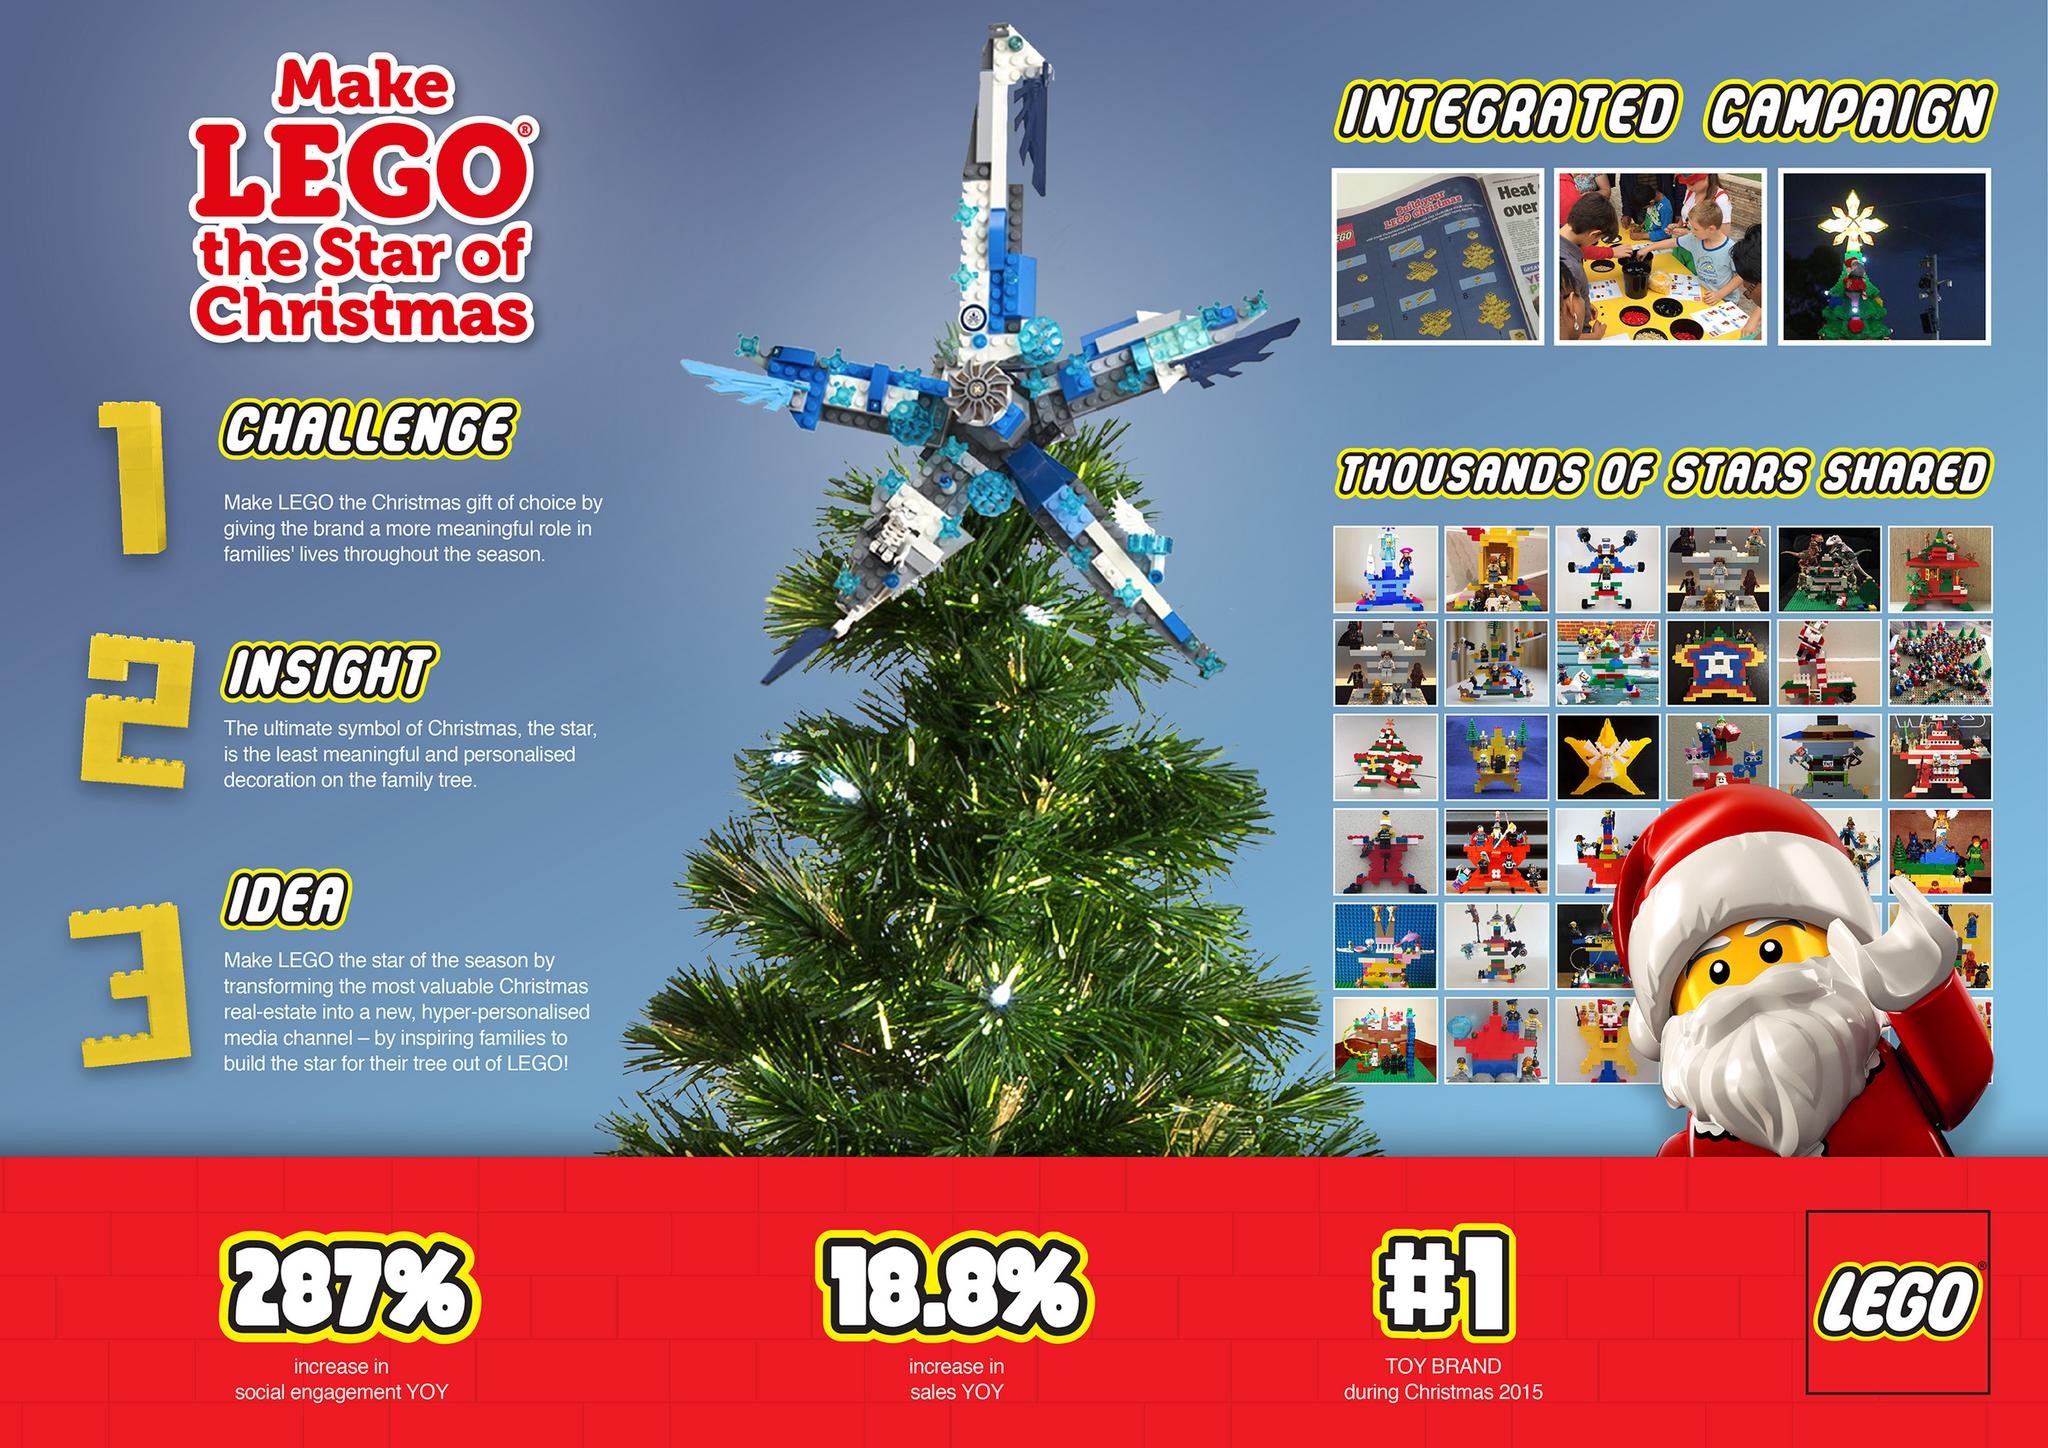 Make LEGO the Star of Christmas